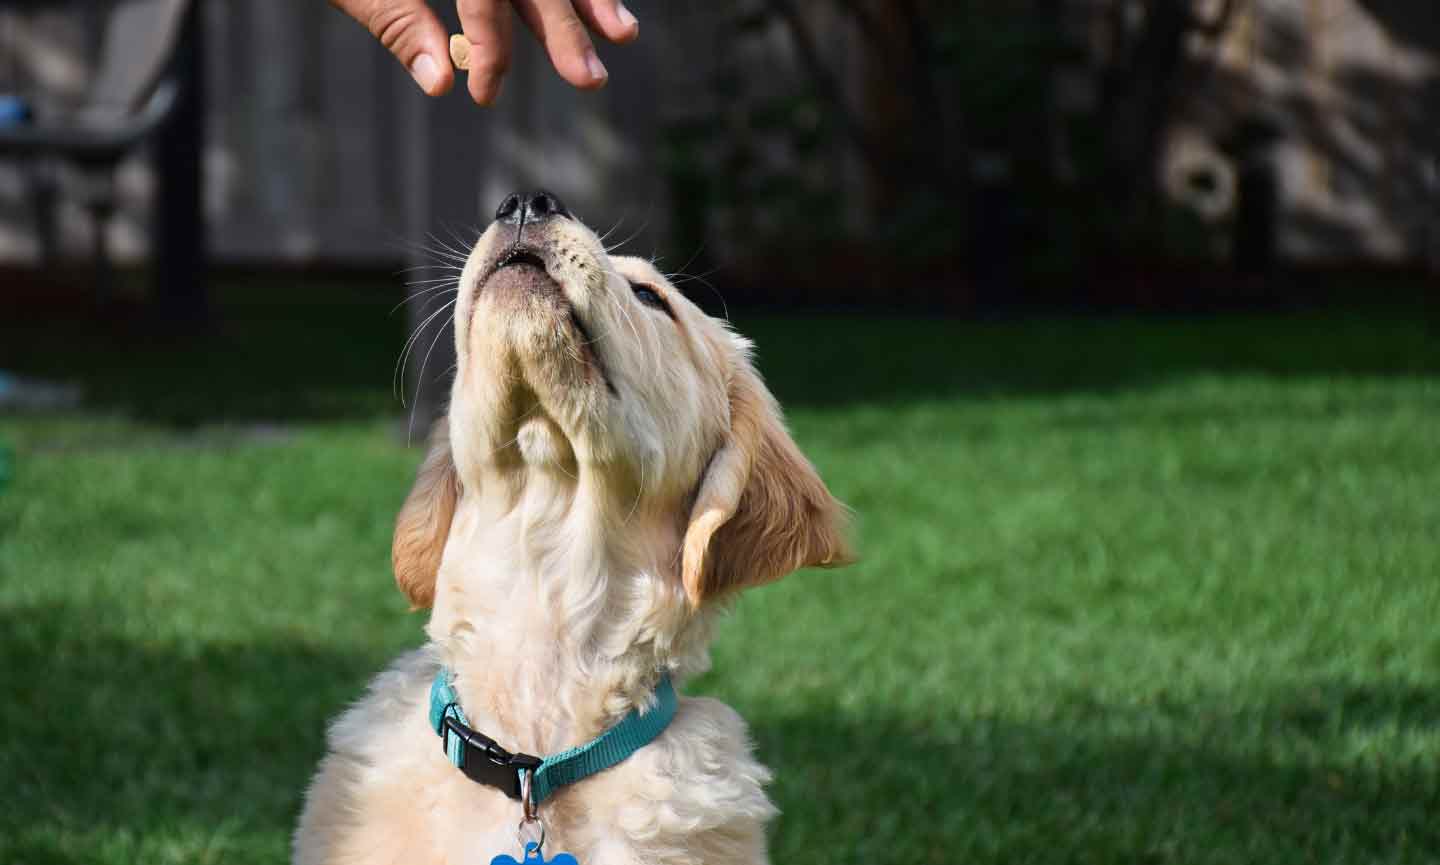 A Golden Retriever puppy getting a treat.